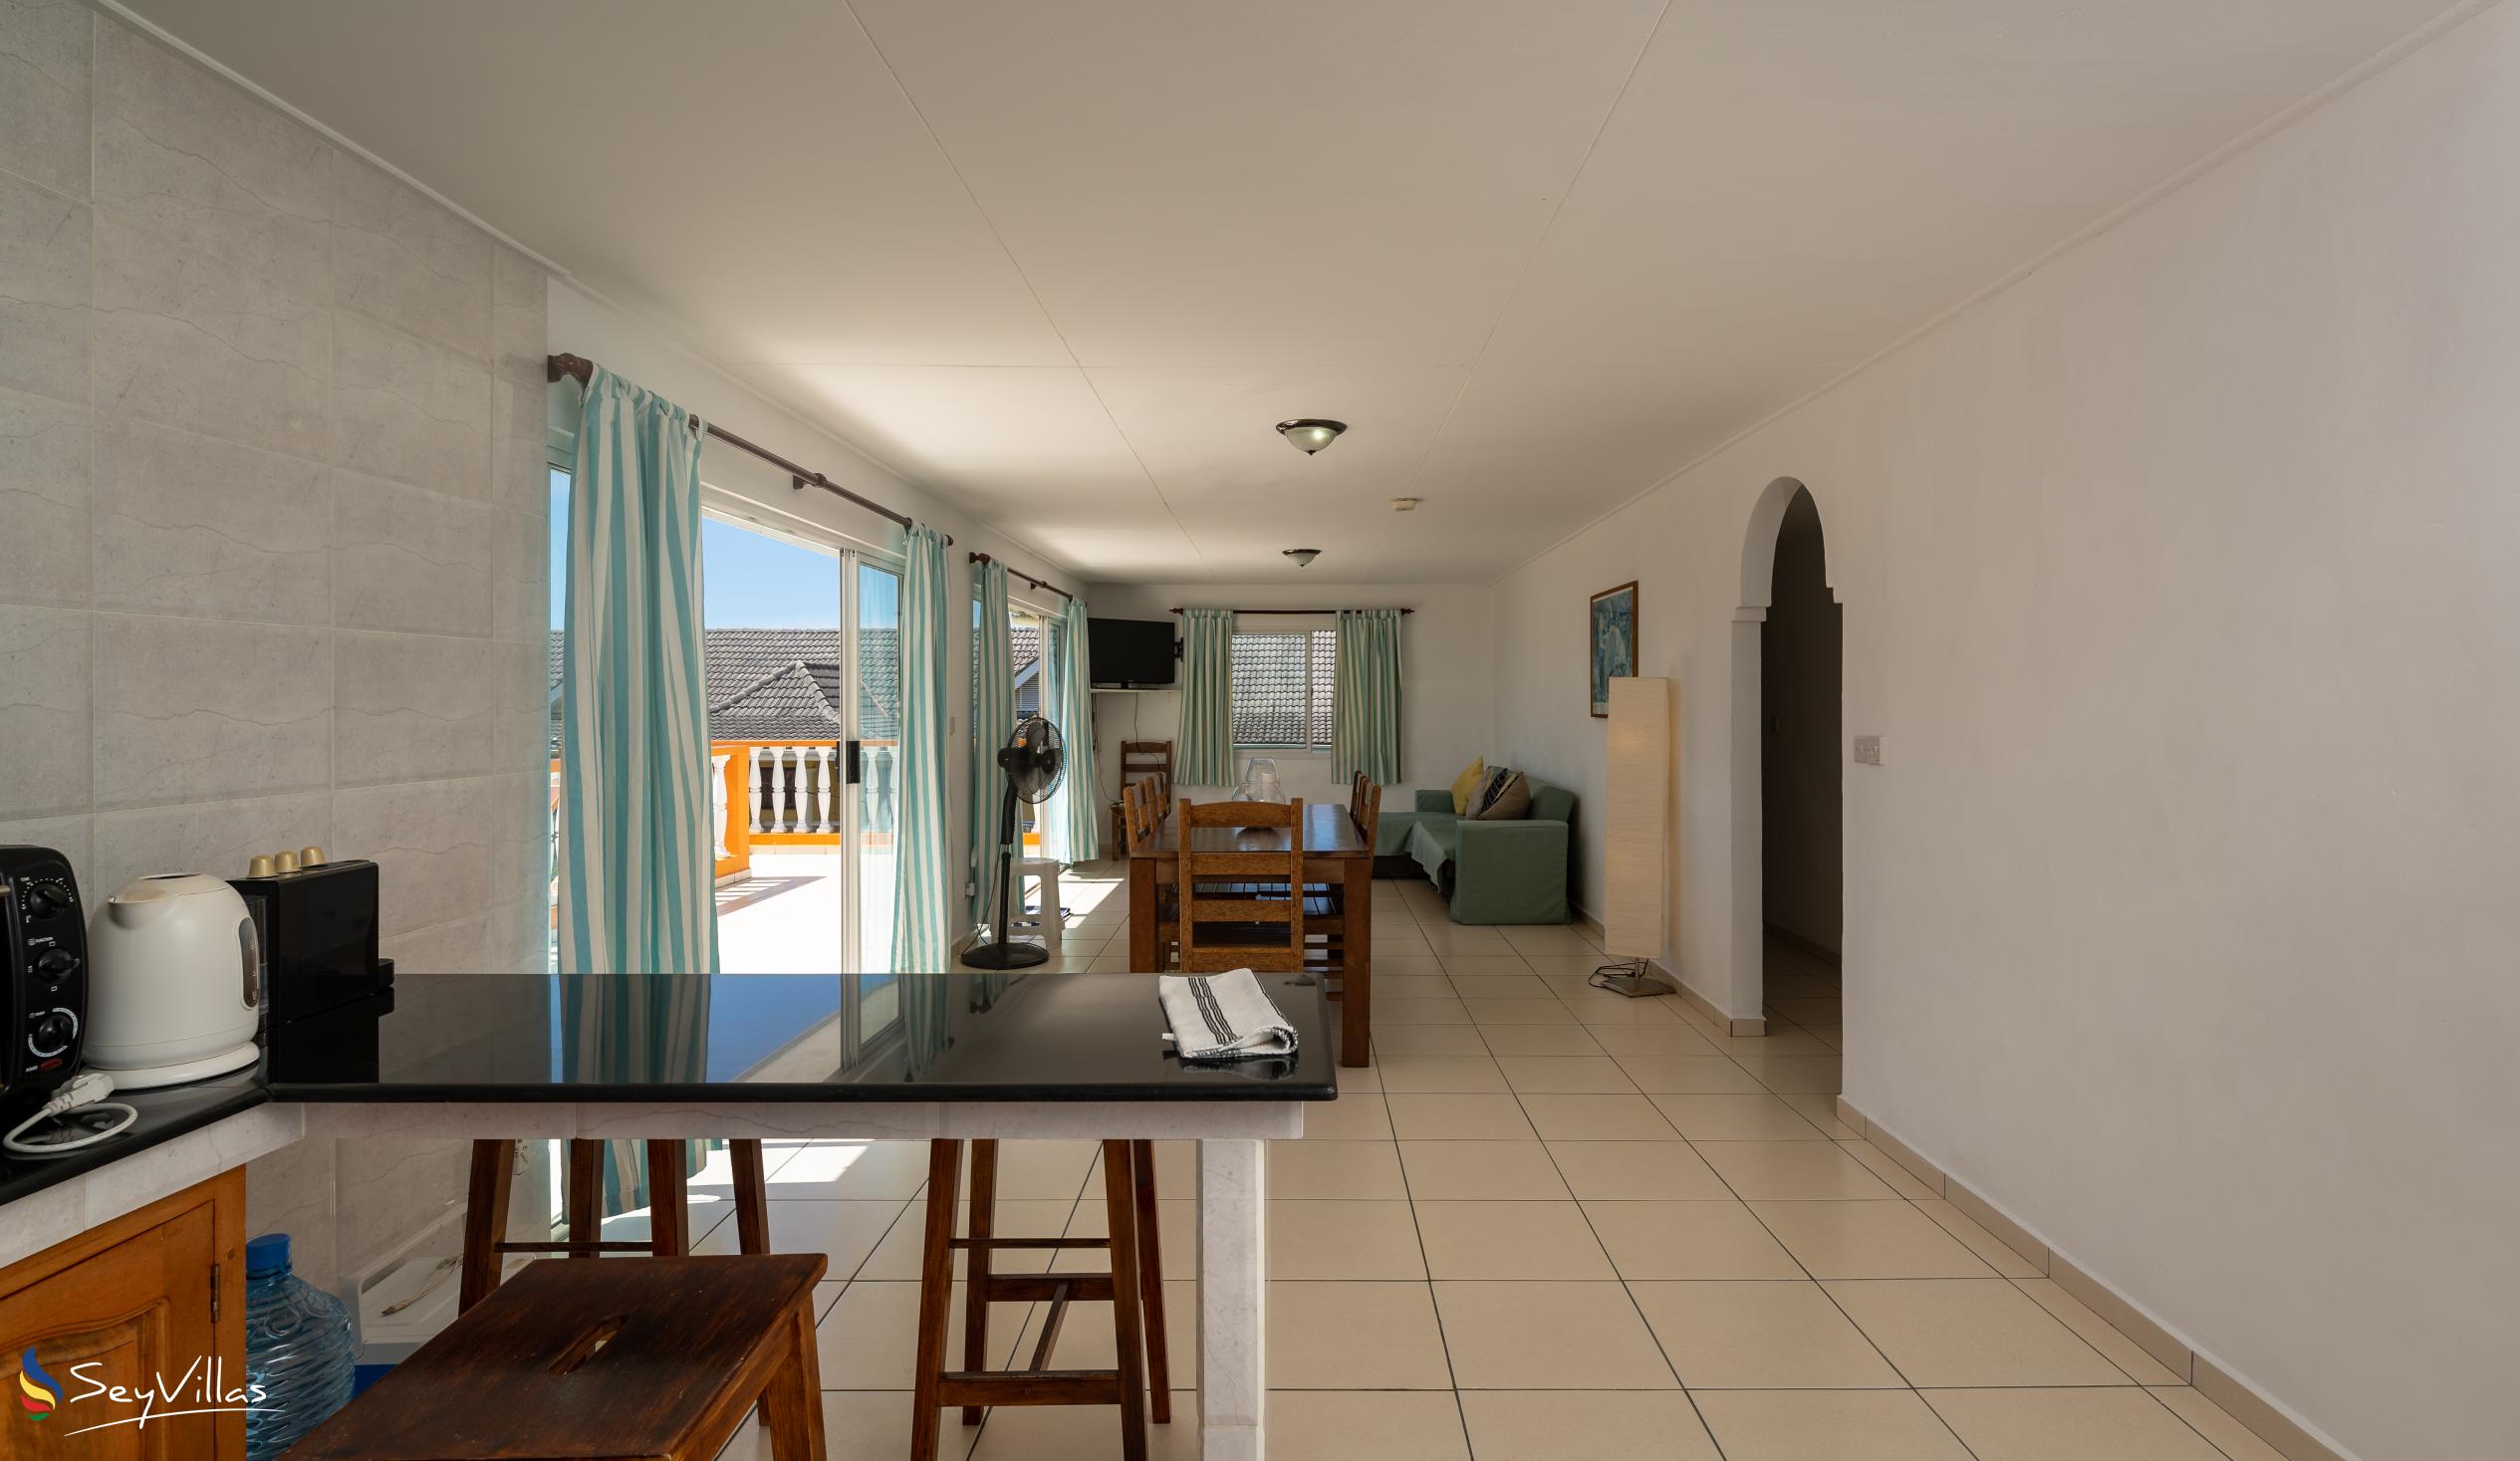 Foto 53: Chez Payet Self Catering - Appartamento con 2 camere Coco - Mahé (Seychelles)